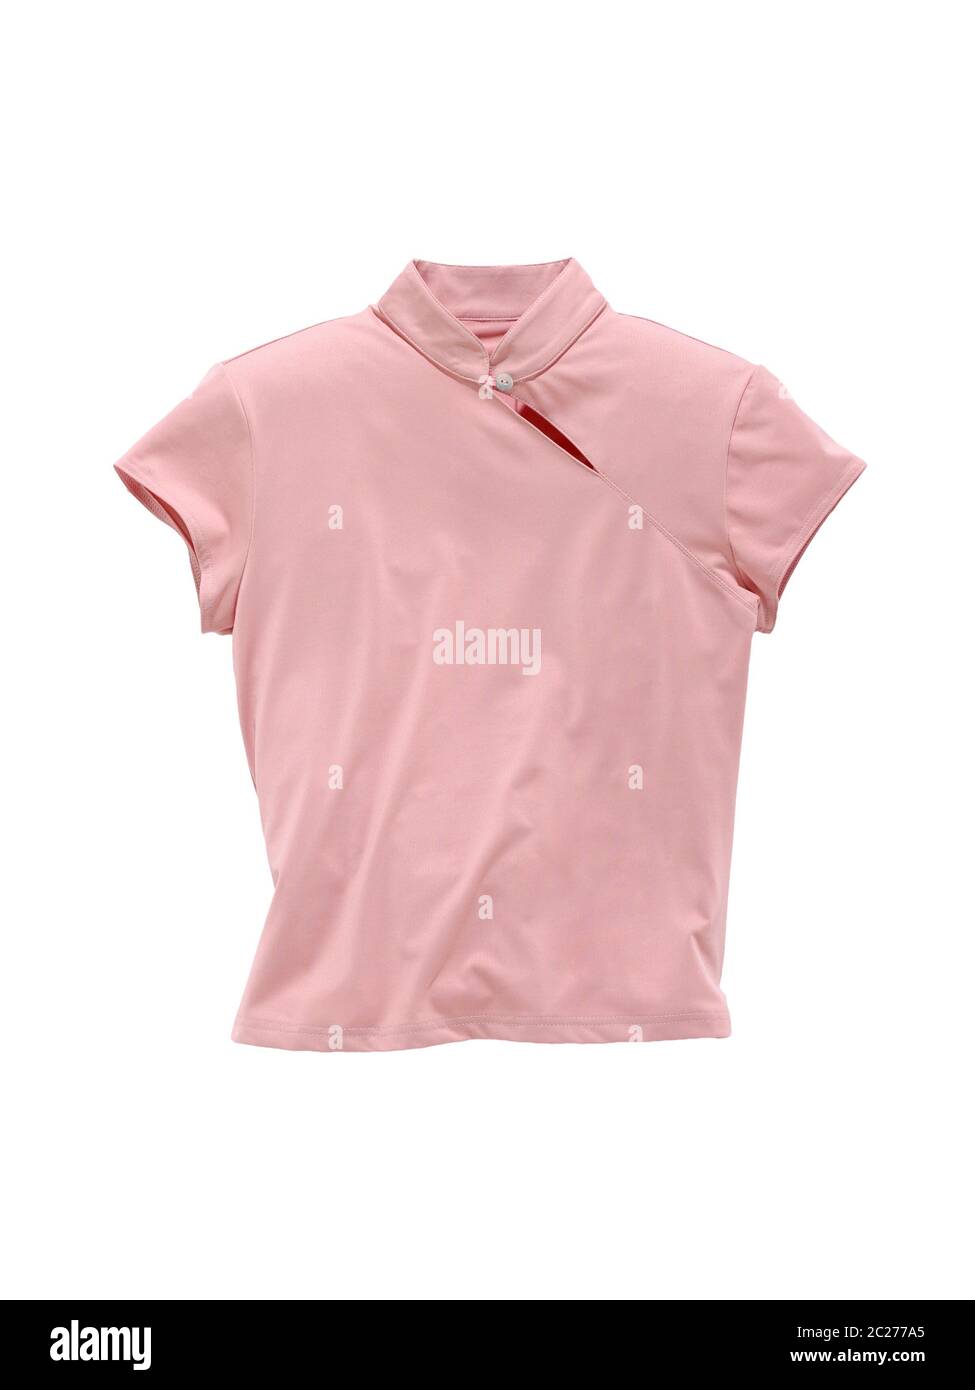 sleeveless blouse pink isolated on white background Stock Photo